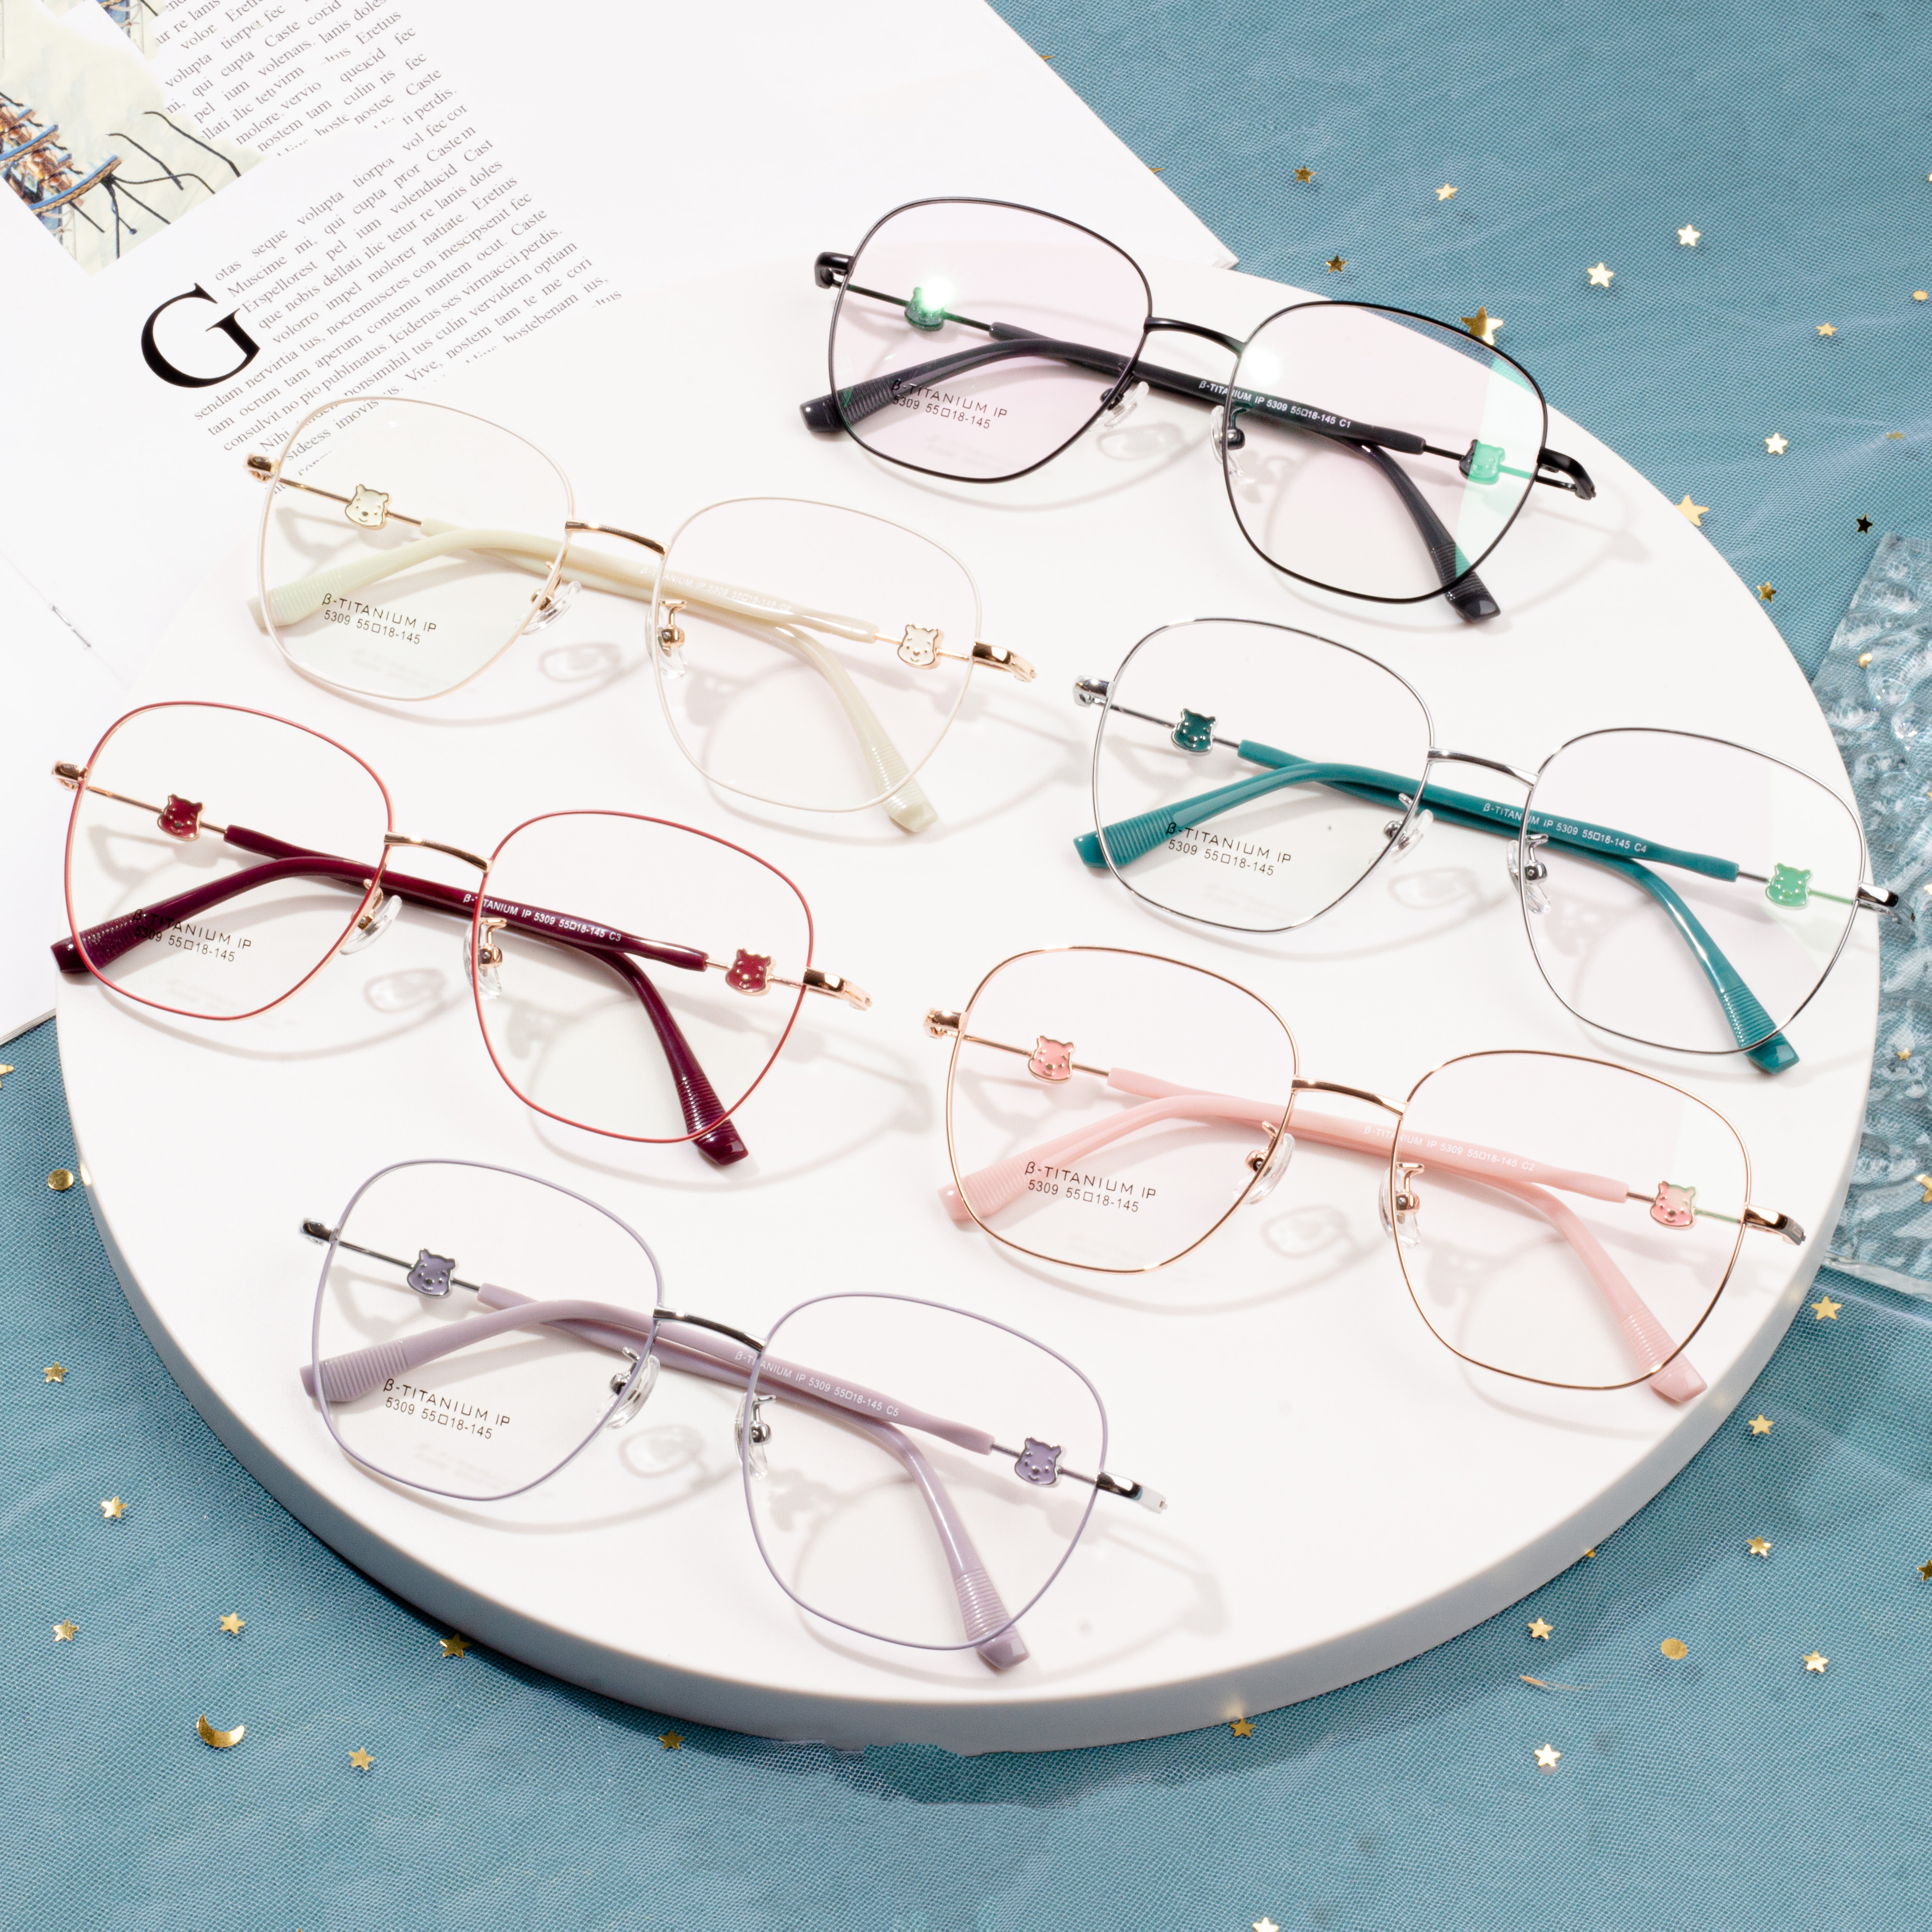 चश्मा फ्रेम शैली में हैं